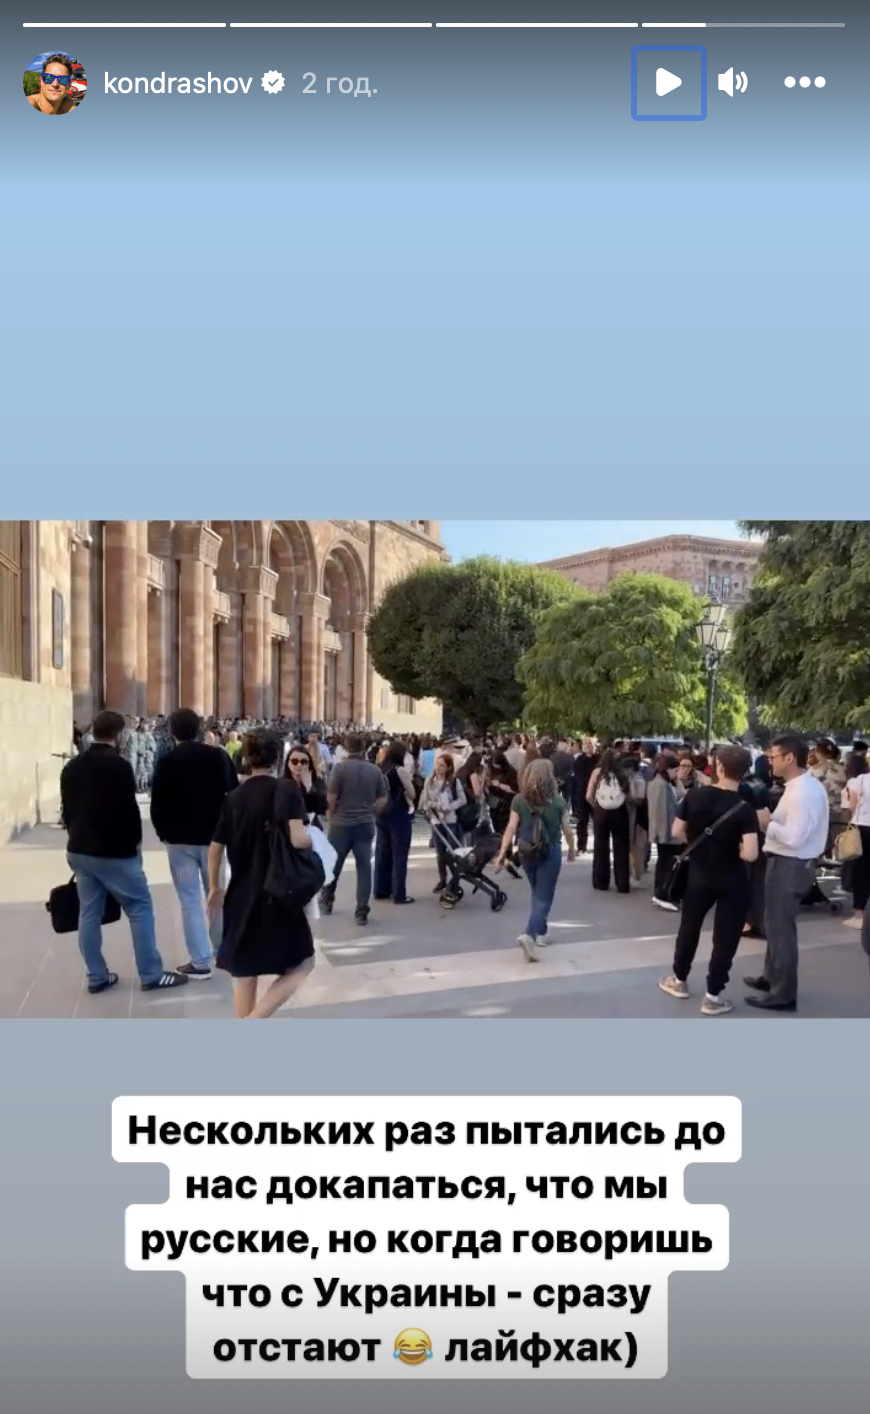 Говорят, что из Украины: российские туристы придумали "лайфхак", чтобы их не трогали из-за национальности